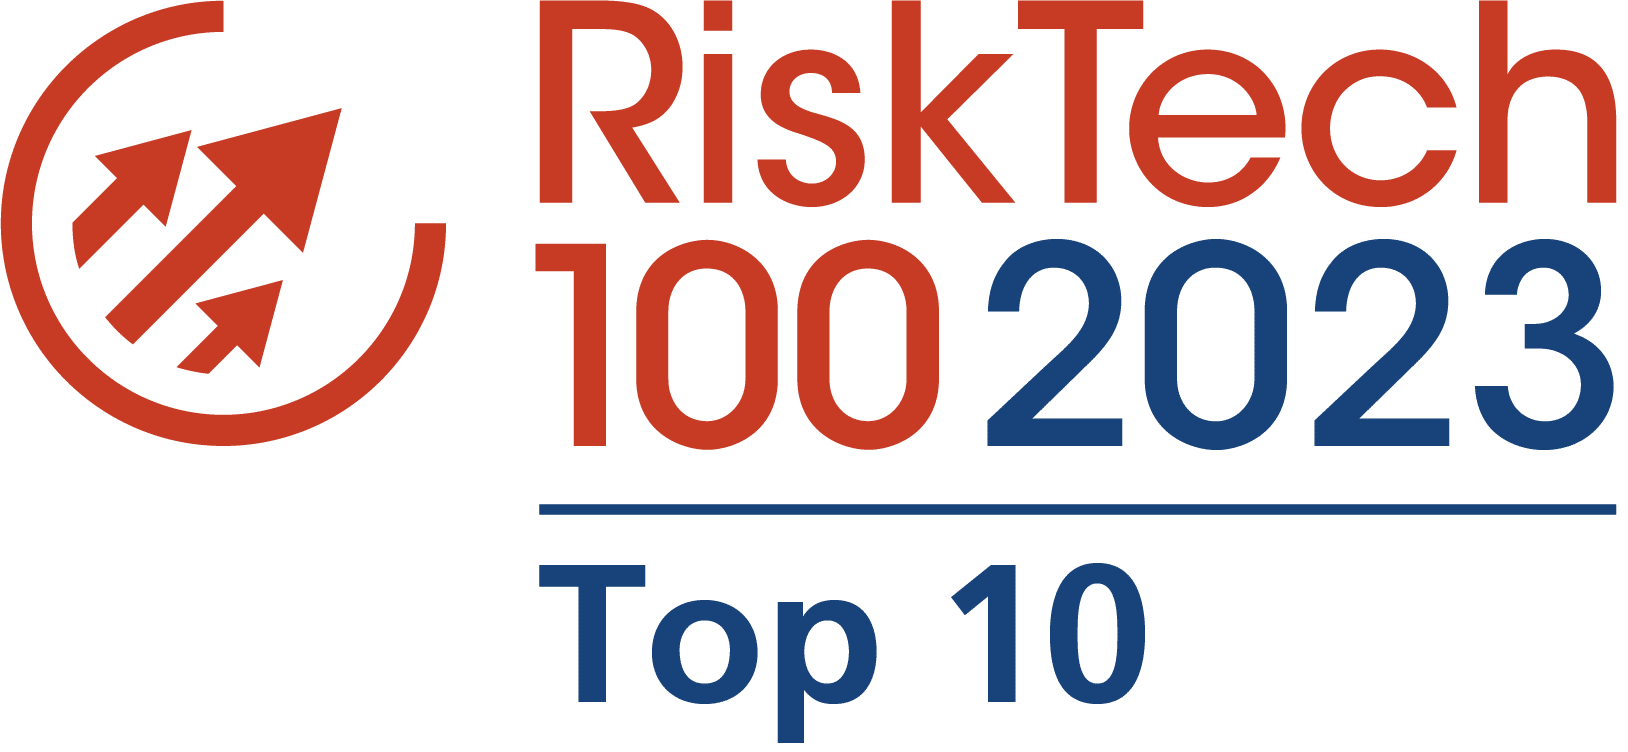 Chartis_RiskTech100 2023_Top 10 logo